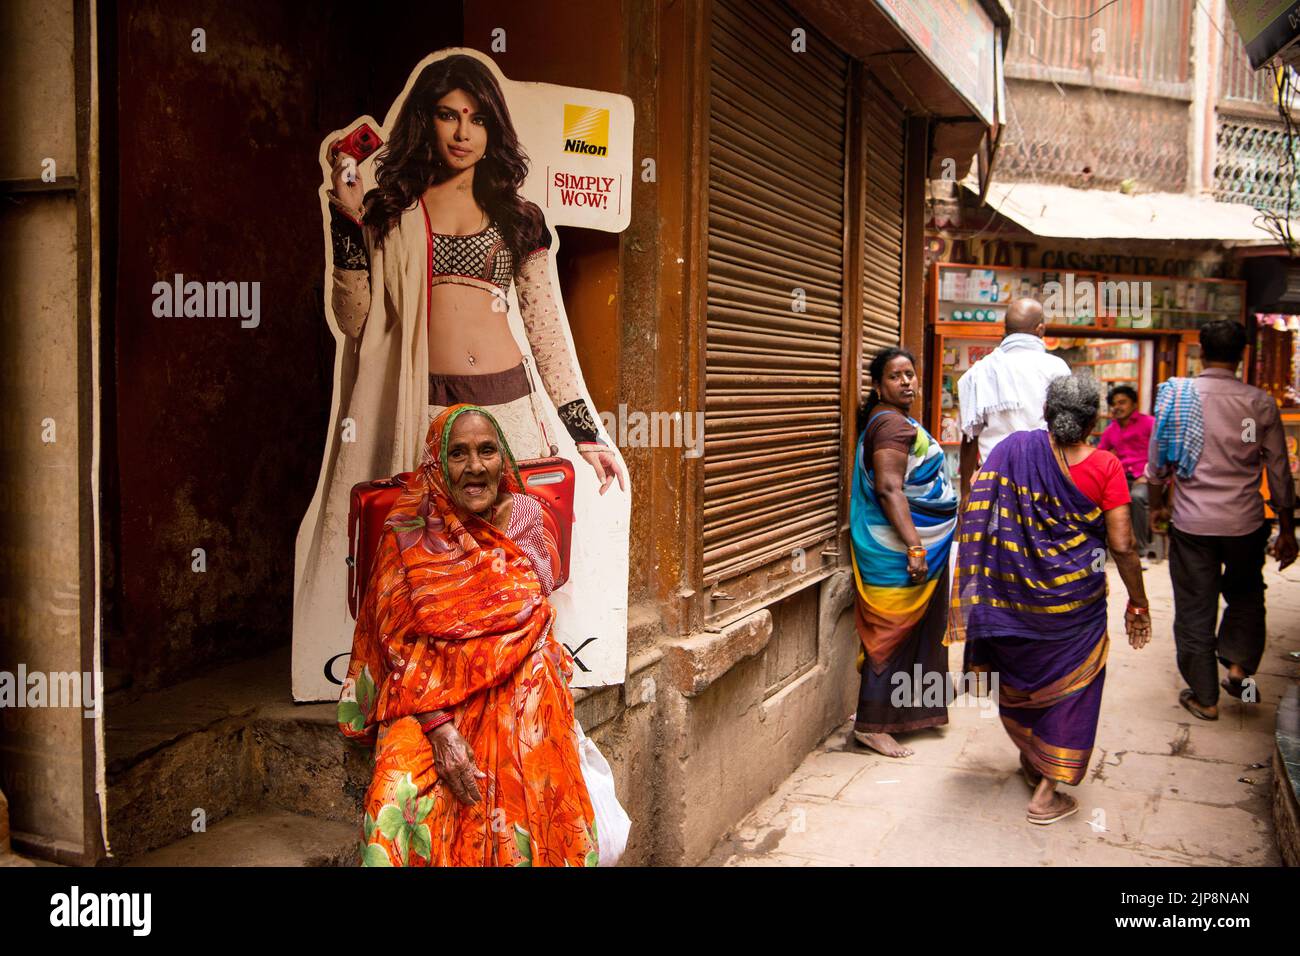 Old Indian woman wearing saree sitting below Nikon shop poster of bikini model in narrow lanes of Varanasi, Banaras, Benaras, Kashi, Uttar Pradesh, India Stock Photo